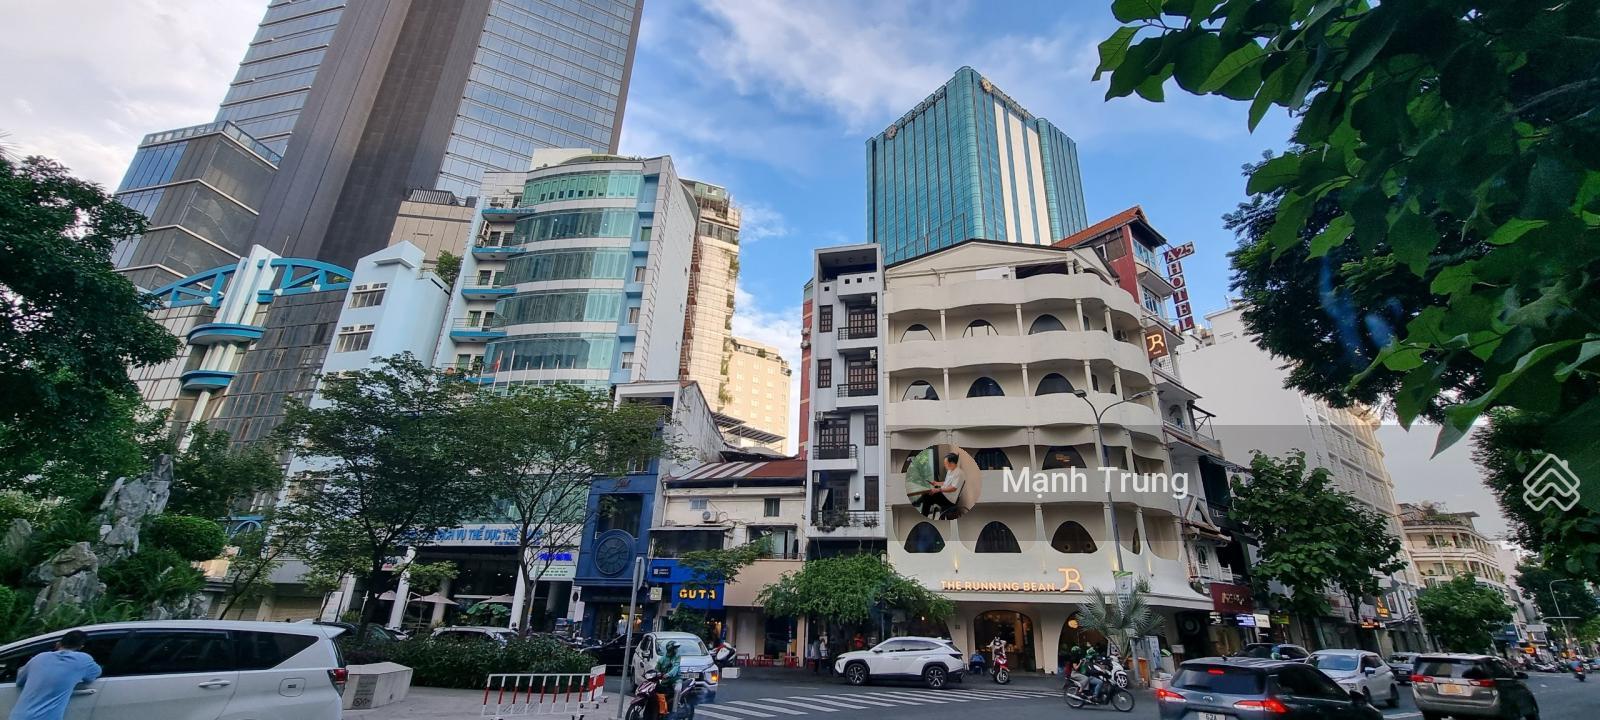 Bán nhà 2 mặt tiền đường Phan Văn Đạt - Mạc Thị Bưởi, p.Bến Nghé, Q.1, 12x26, 310m2, giá 340 tỷ TL